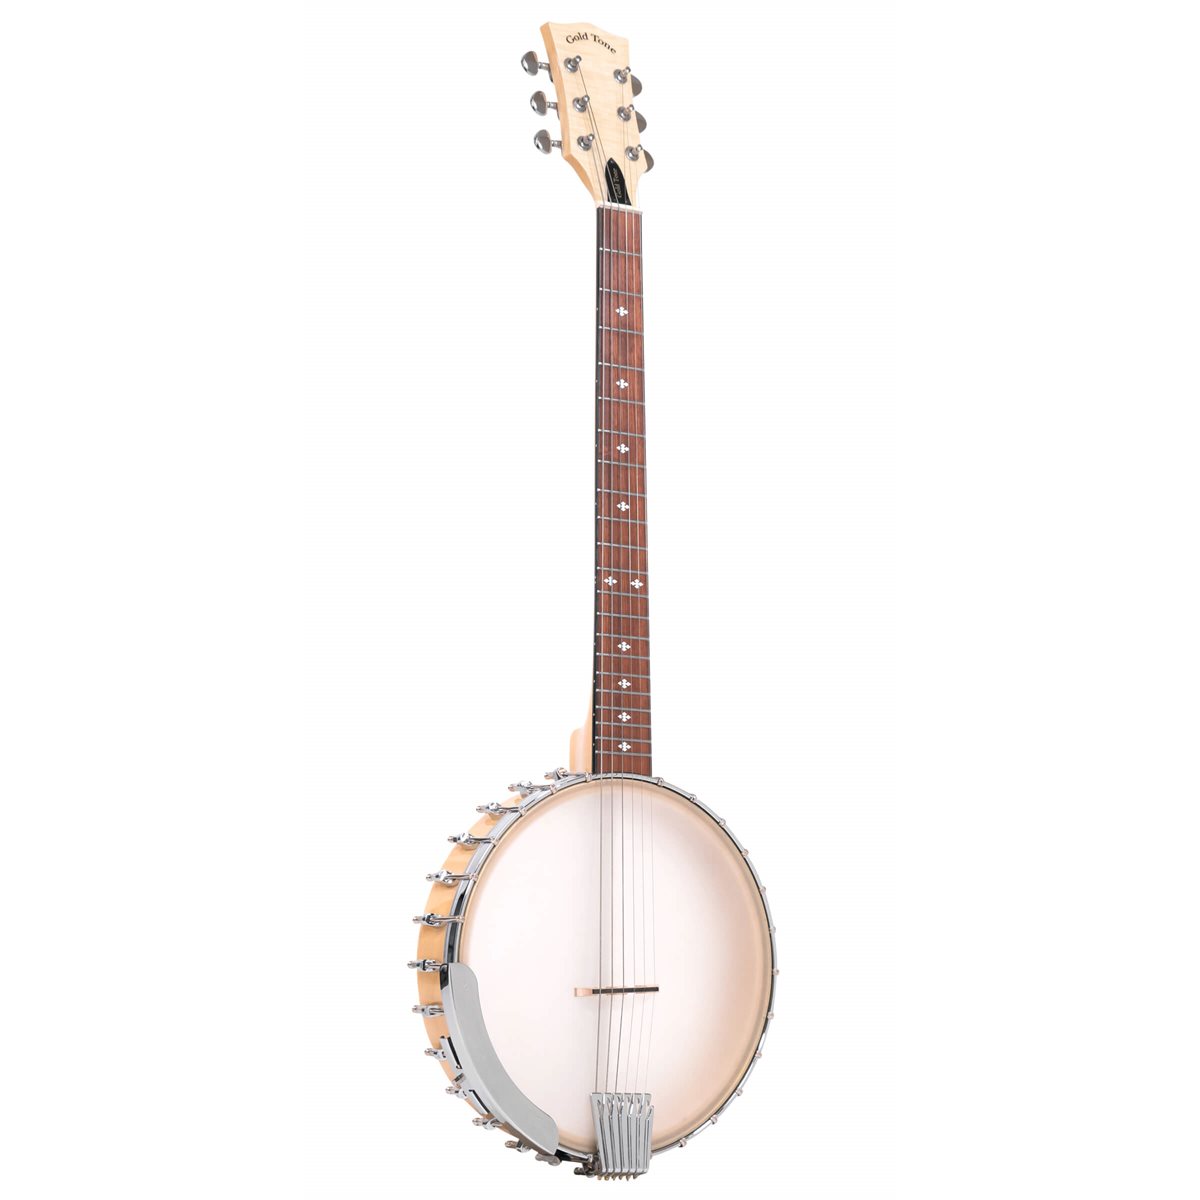 GOLD TONE - bt-1000 - Banjo guitare à 6 cordes